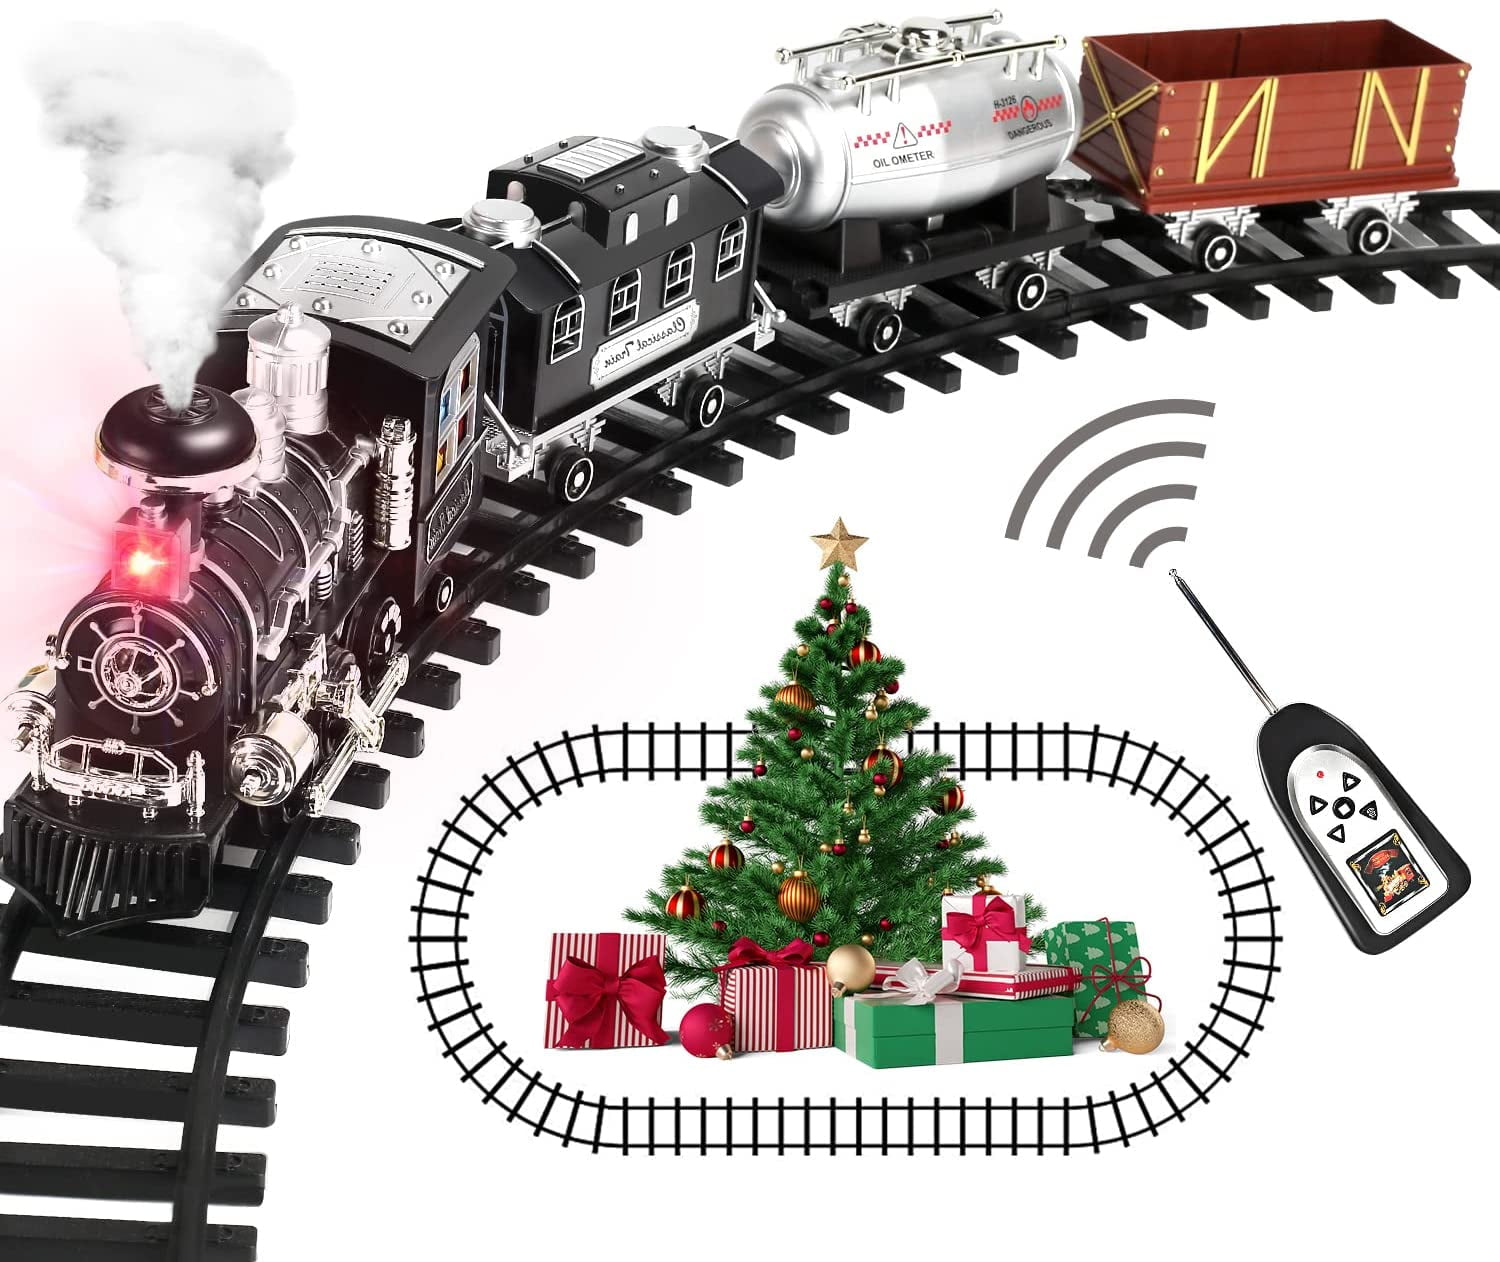 Christmas Smoke & Light Up LED Santa Express Locomotive Train Xmas Toy Gift Set